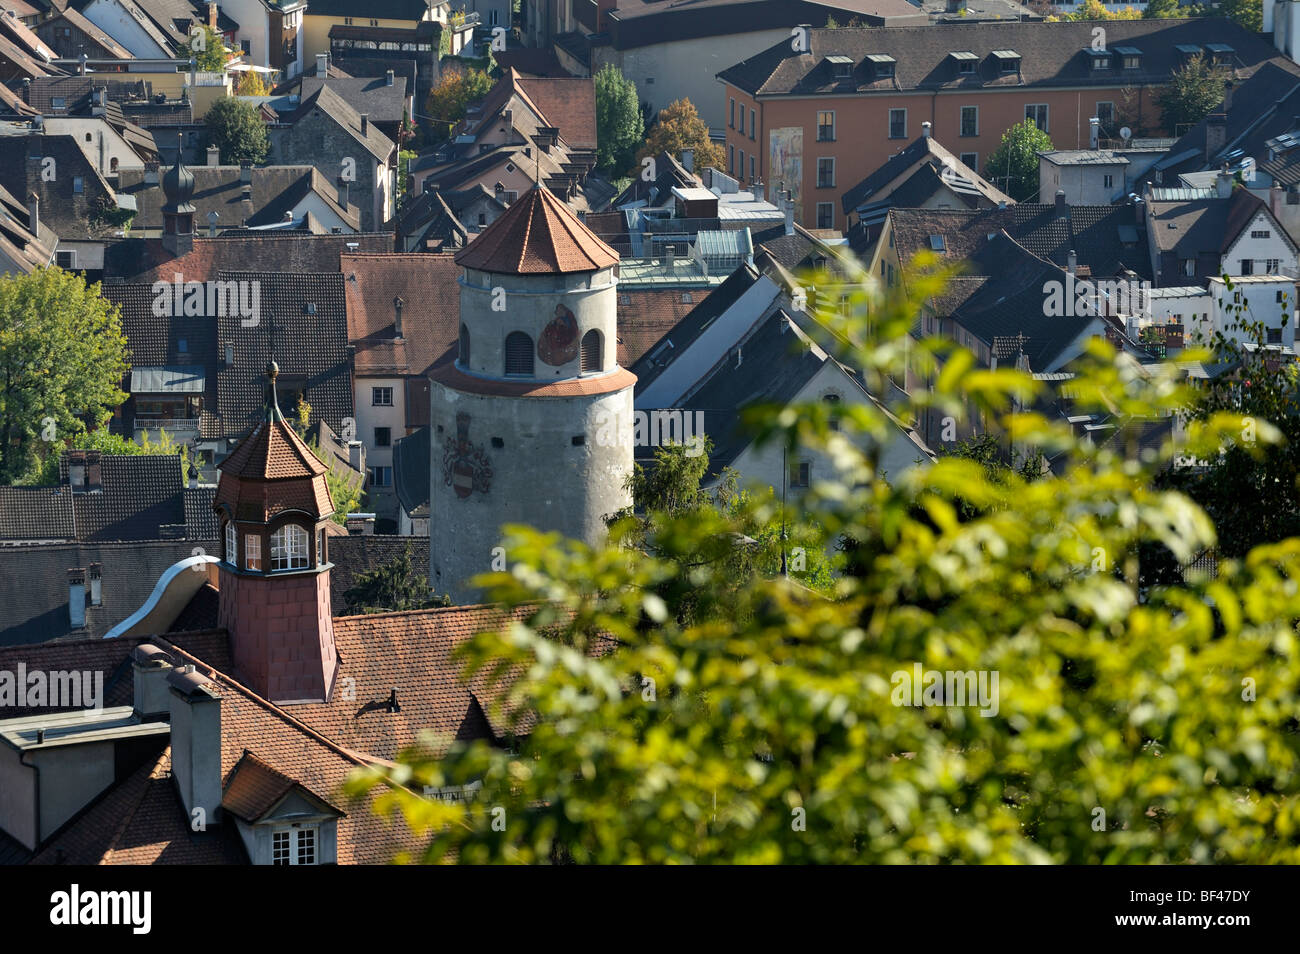 Katzenturm tower of Feldkirch, Austria AT Stock Photo